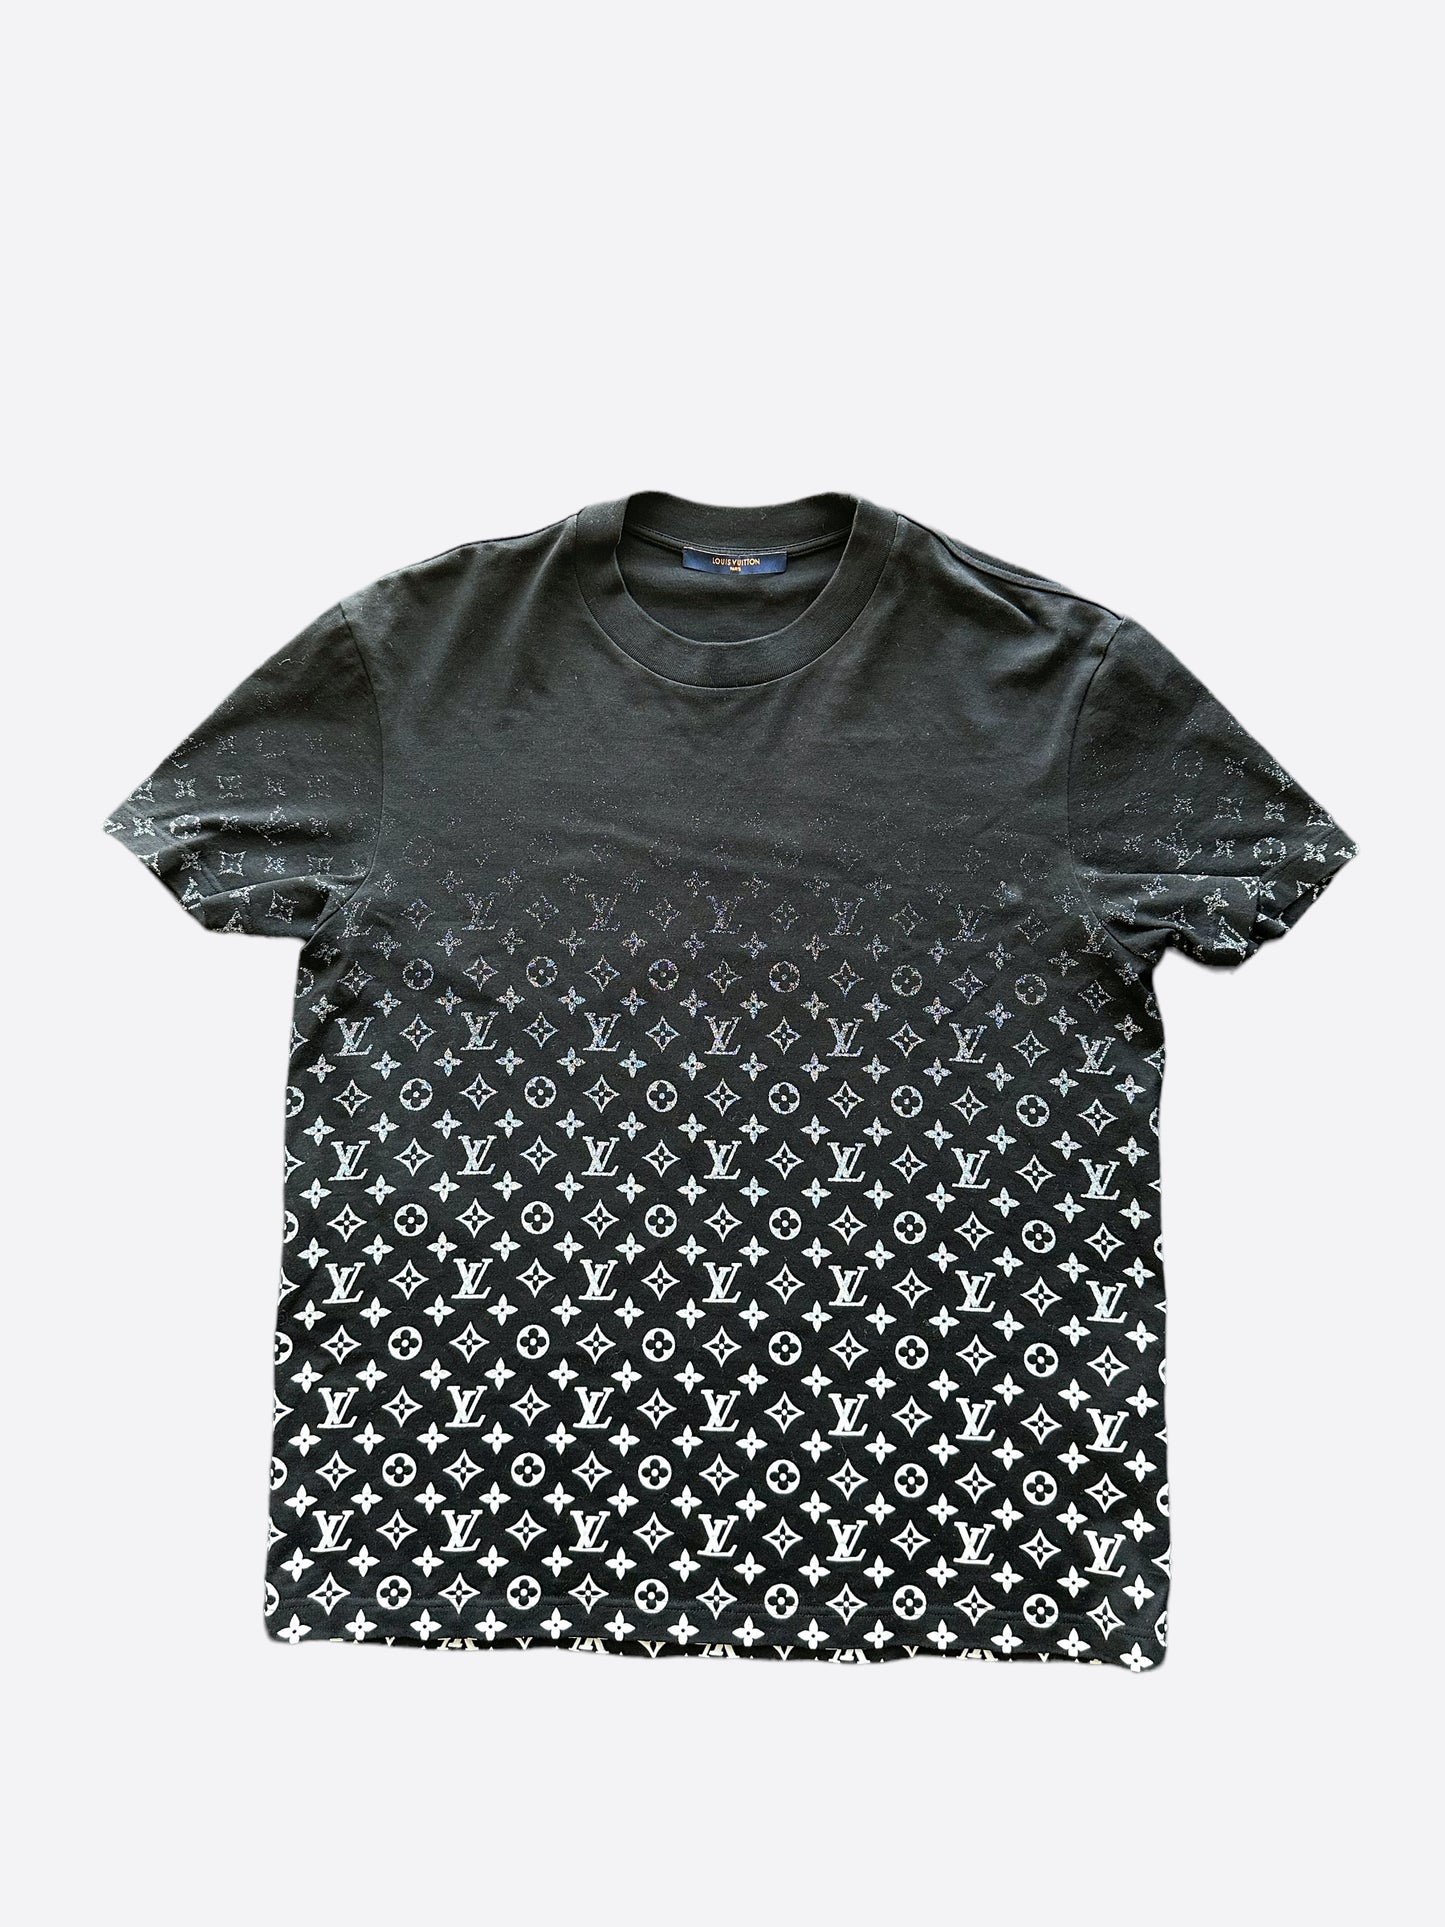 Louis Vuitton Black Monogram Gradient T-shirt Size Large. Retails